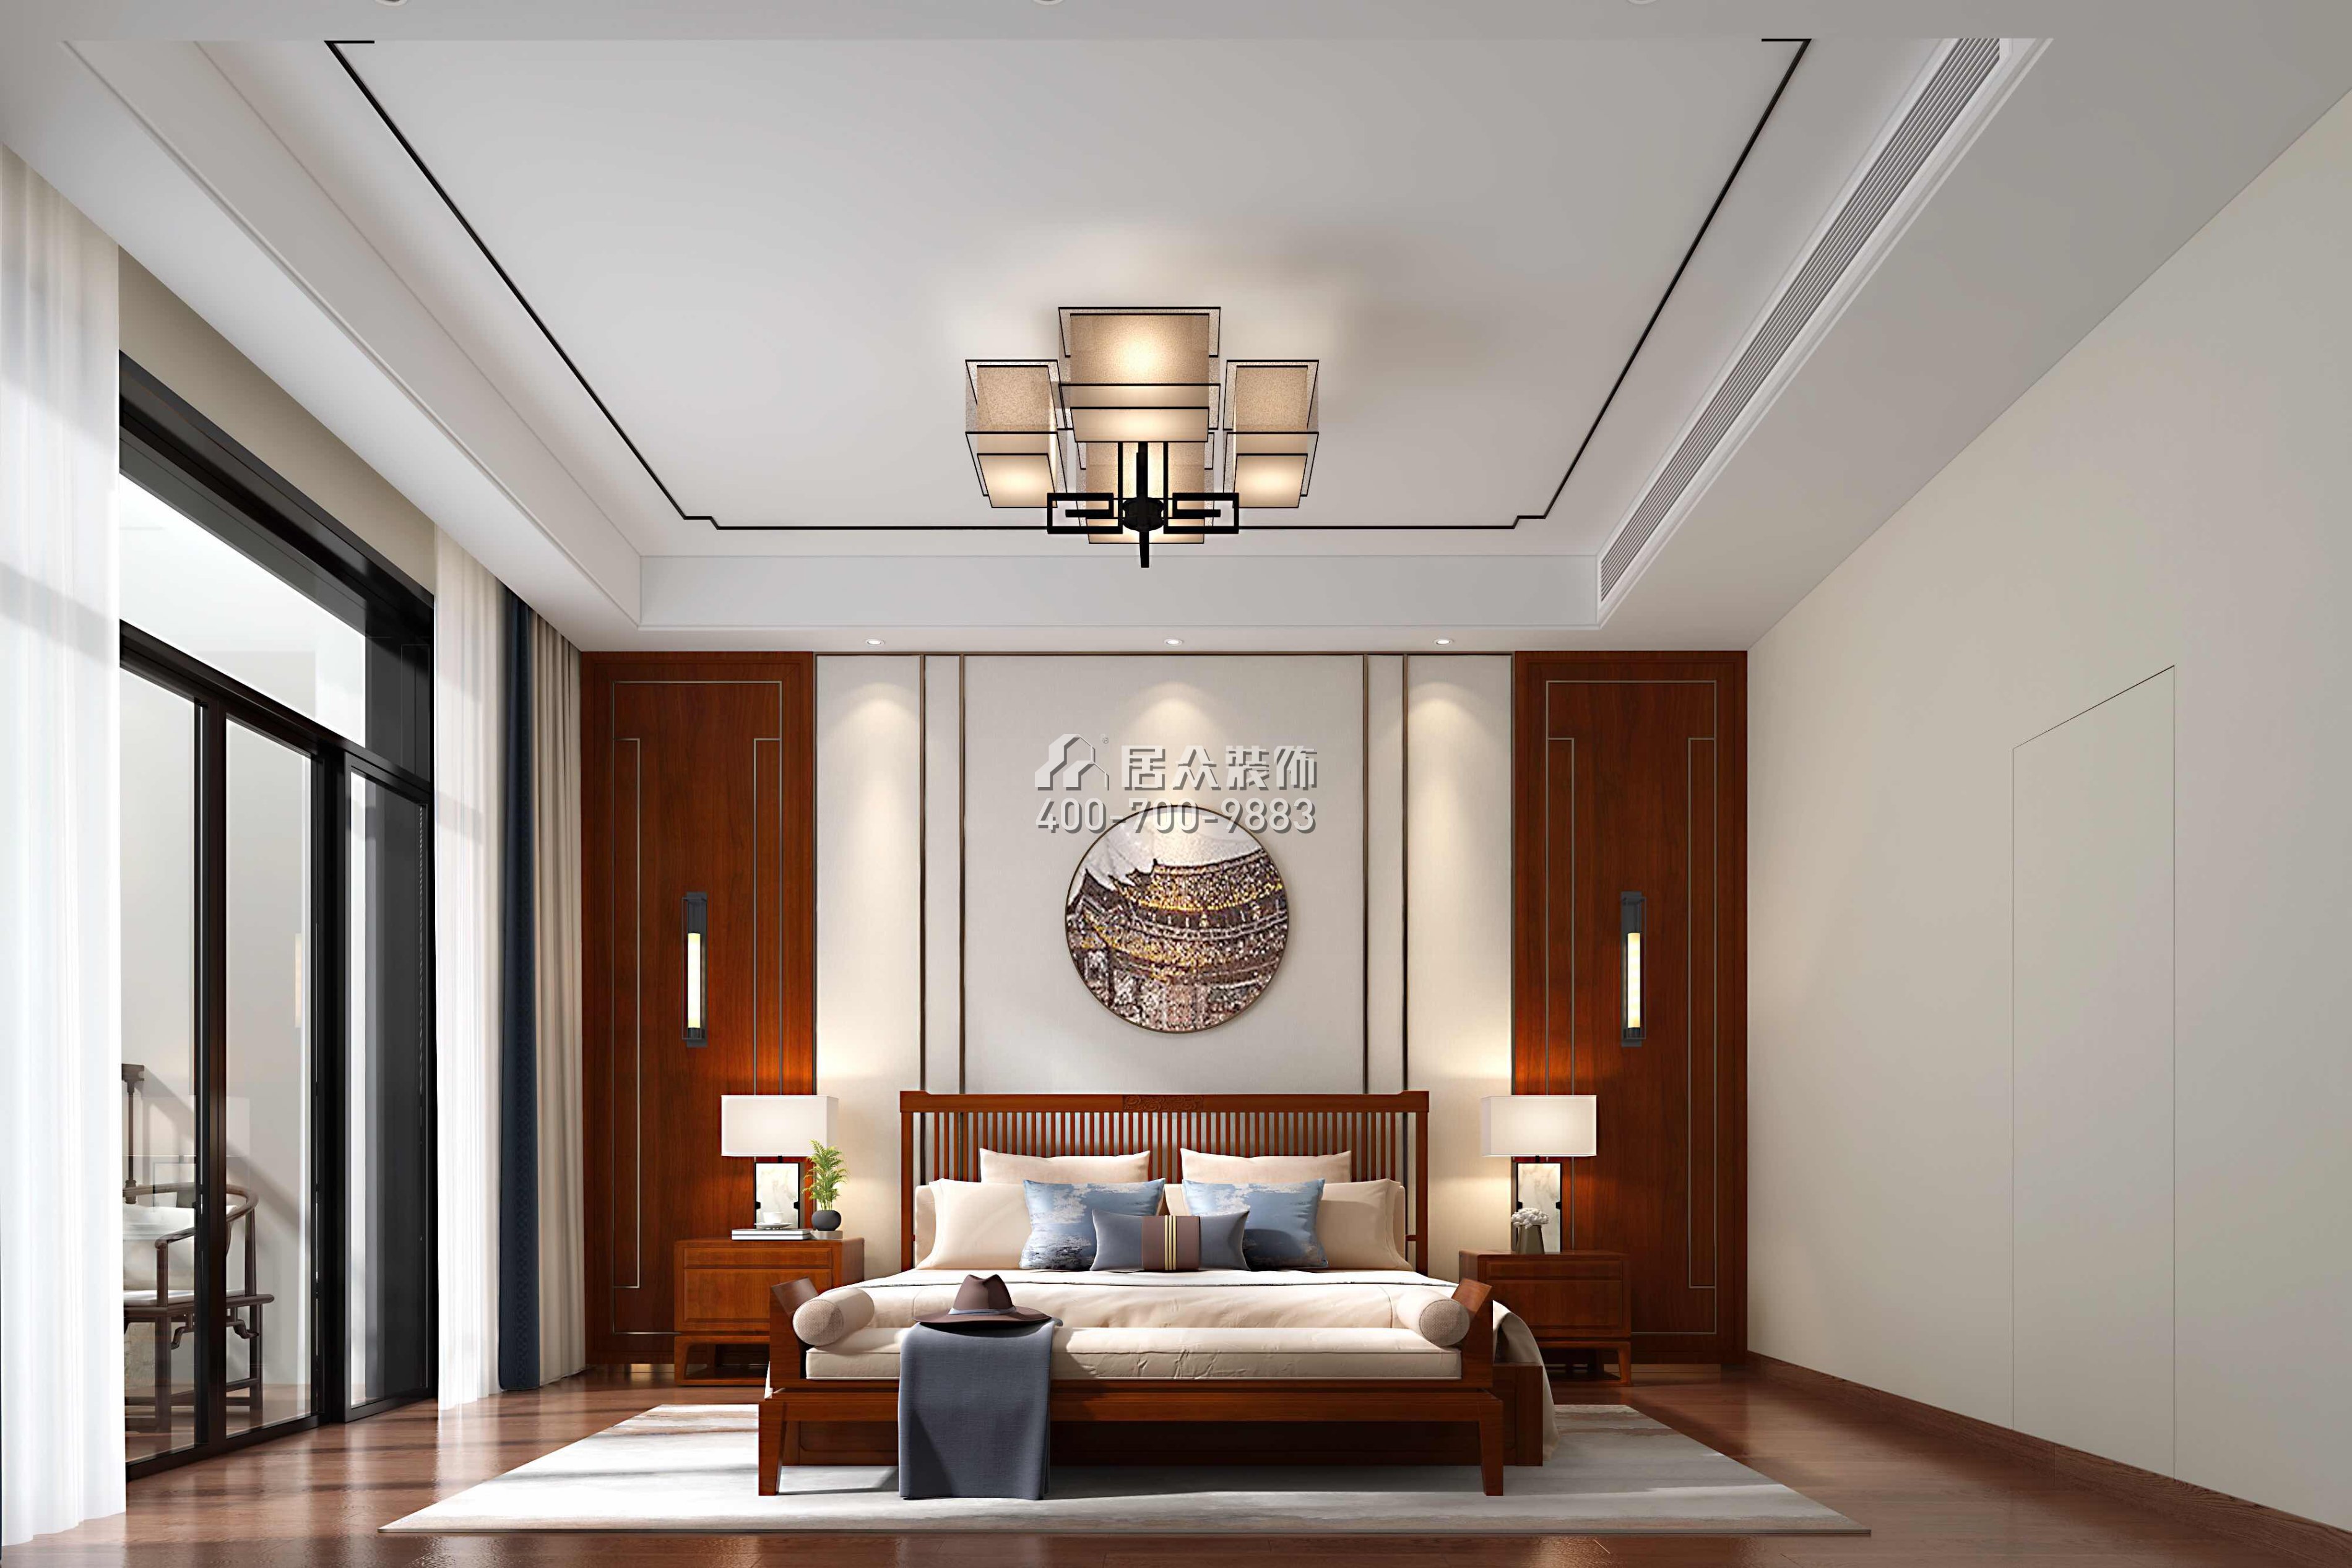 雅居乐白鹭湖300平方米中式风格平层户型卧室装修效果图